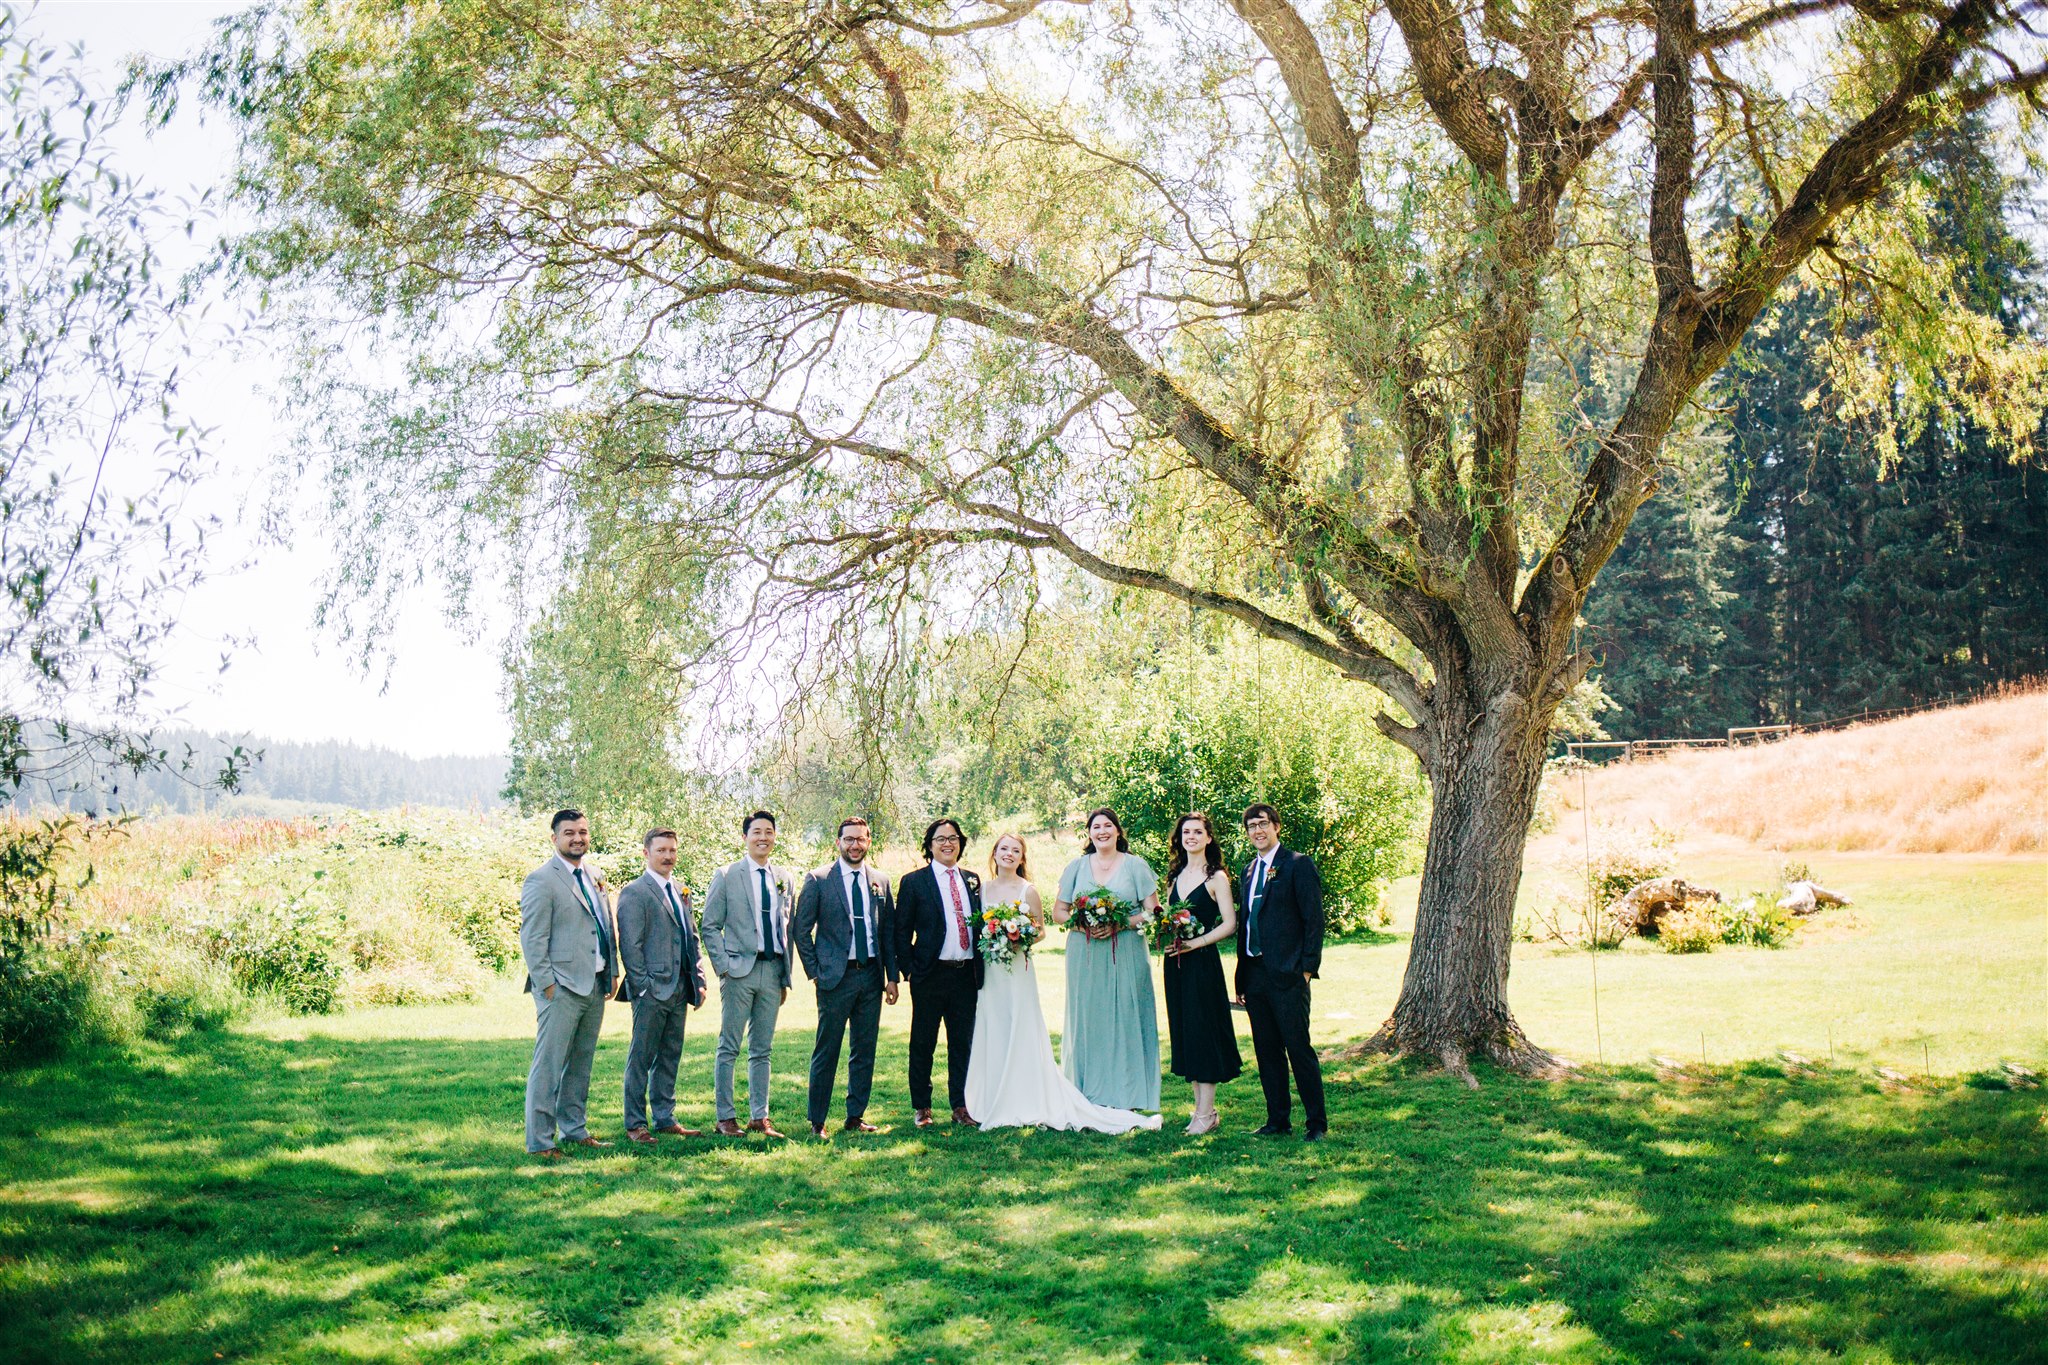 Seattle wedding photographer, Whidbey island wedding, Whidbey island wedding photographer, pnw wedding photographer